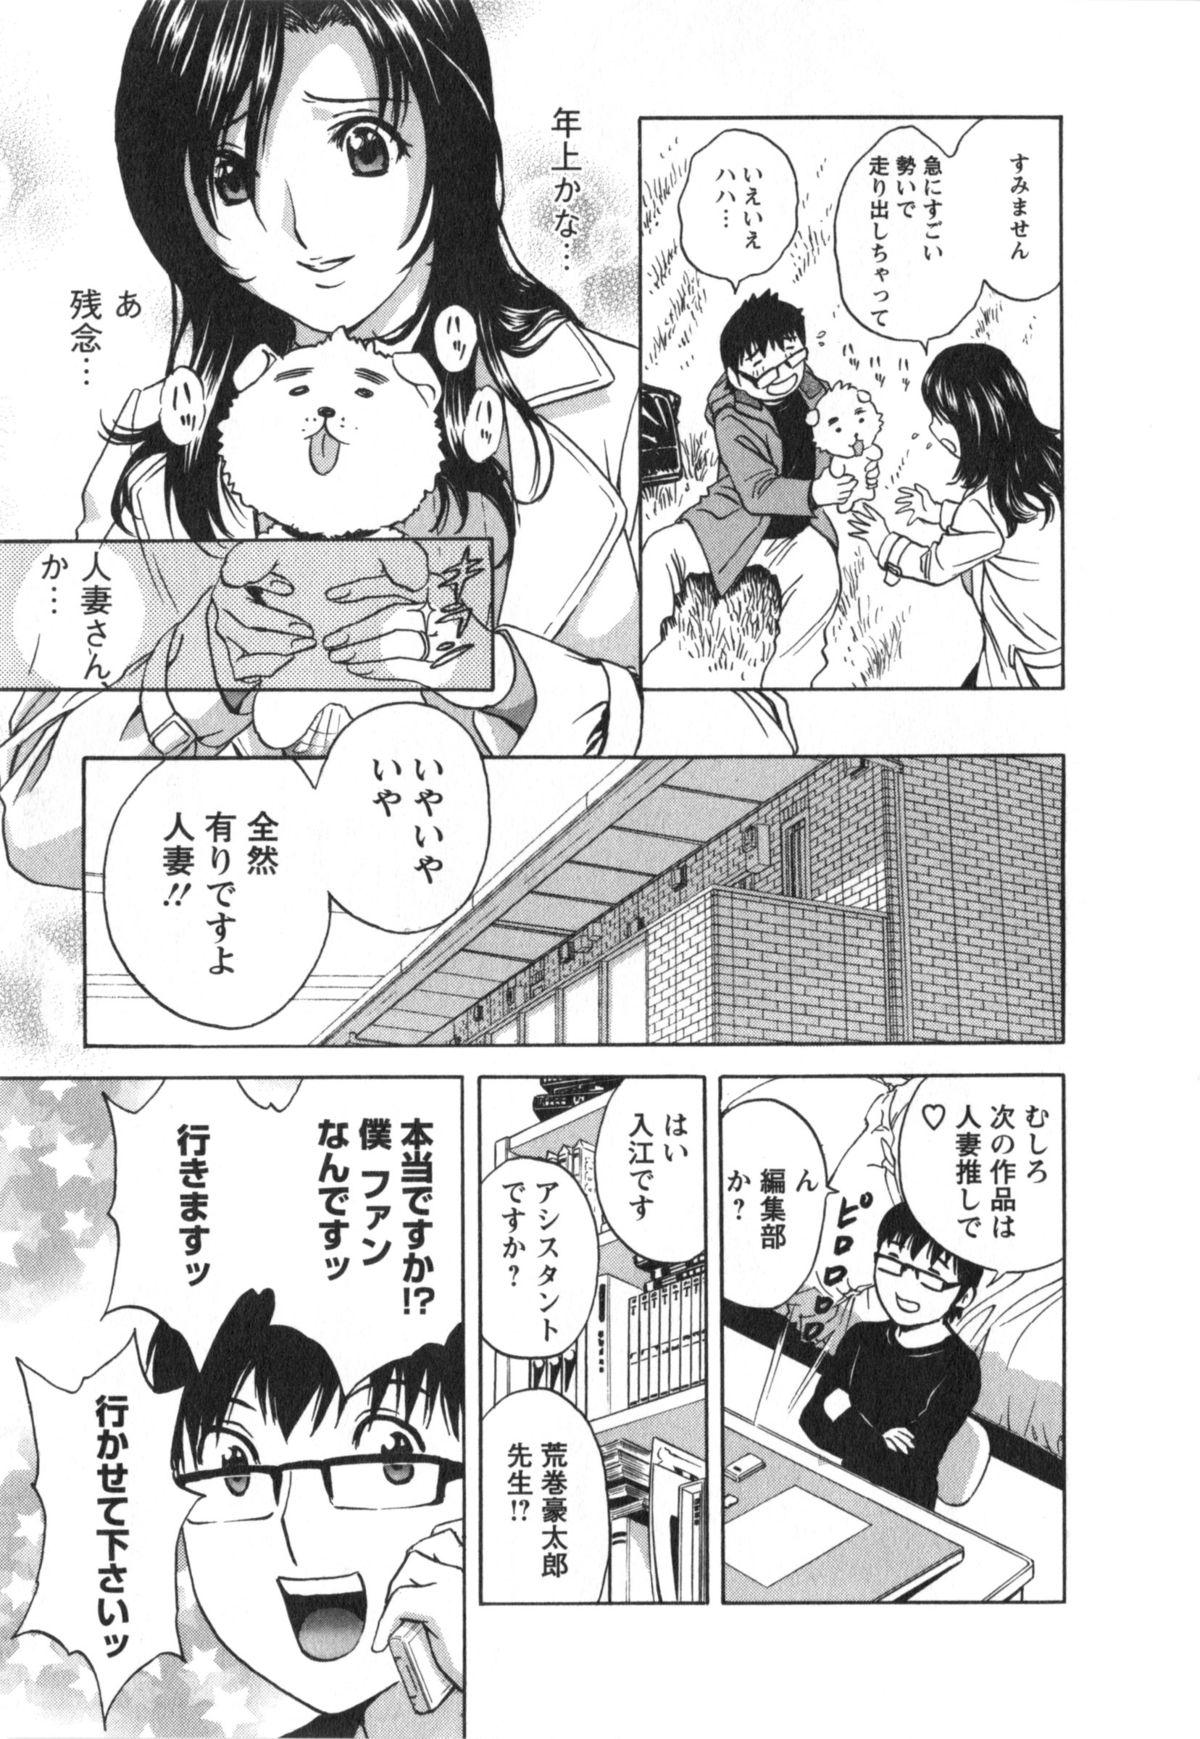 Manga no youna Hitozuma to no Hibi - Days with Married Women such as Comics. 11